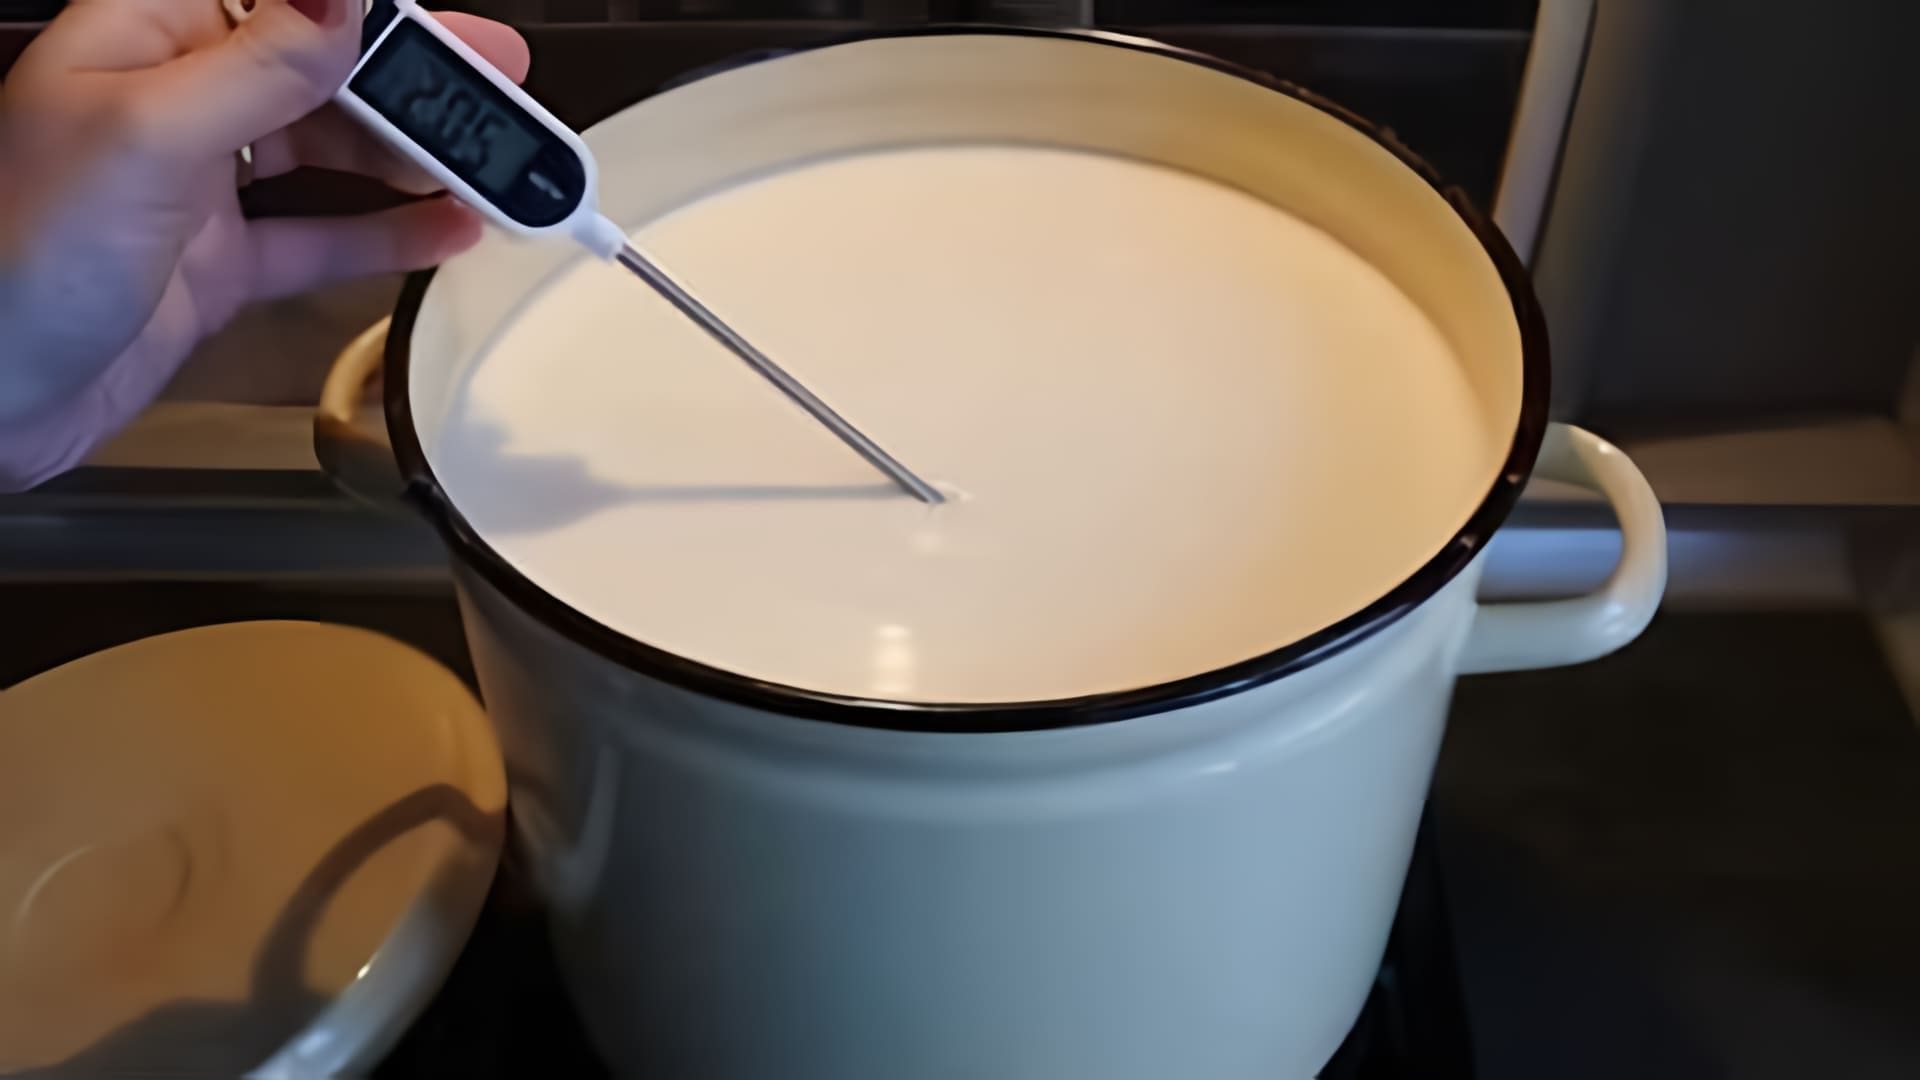 В этом видео рассказывается о процессе пастеризации молока дома для приготовления натурального сыра